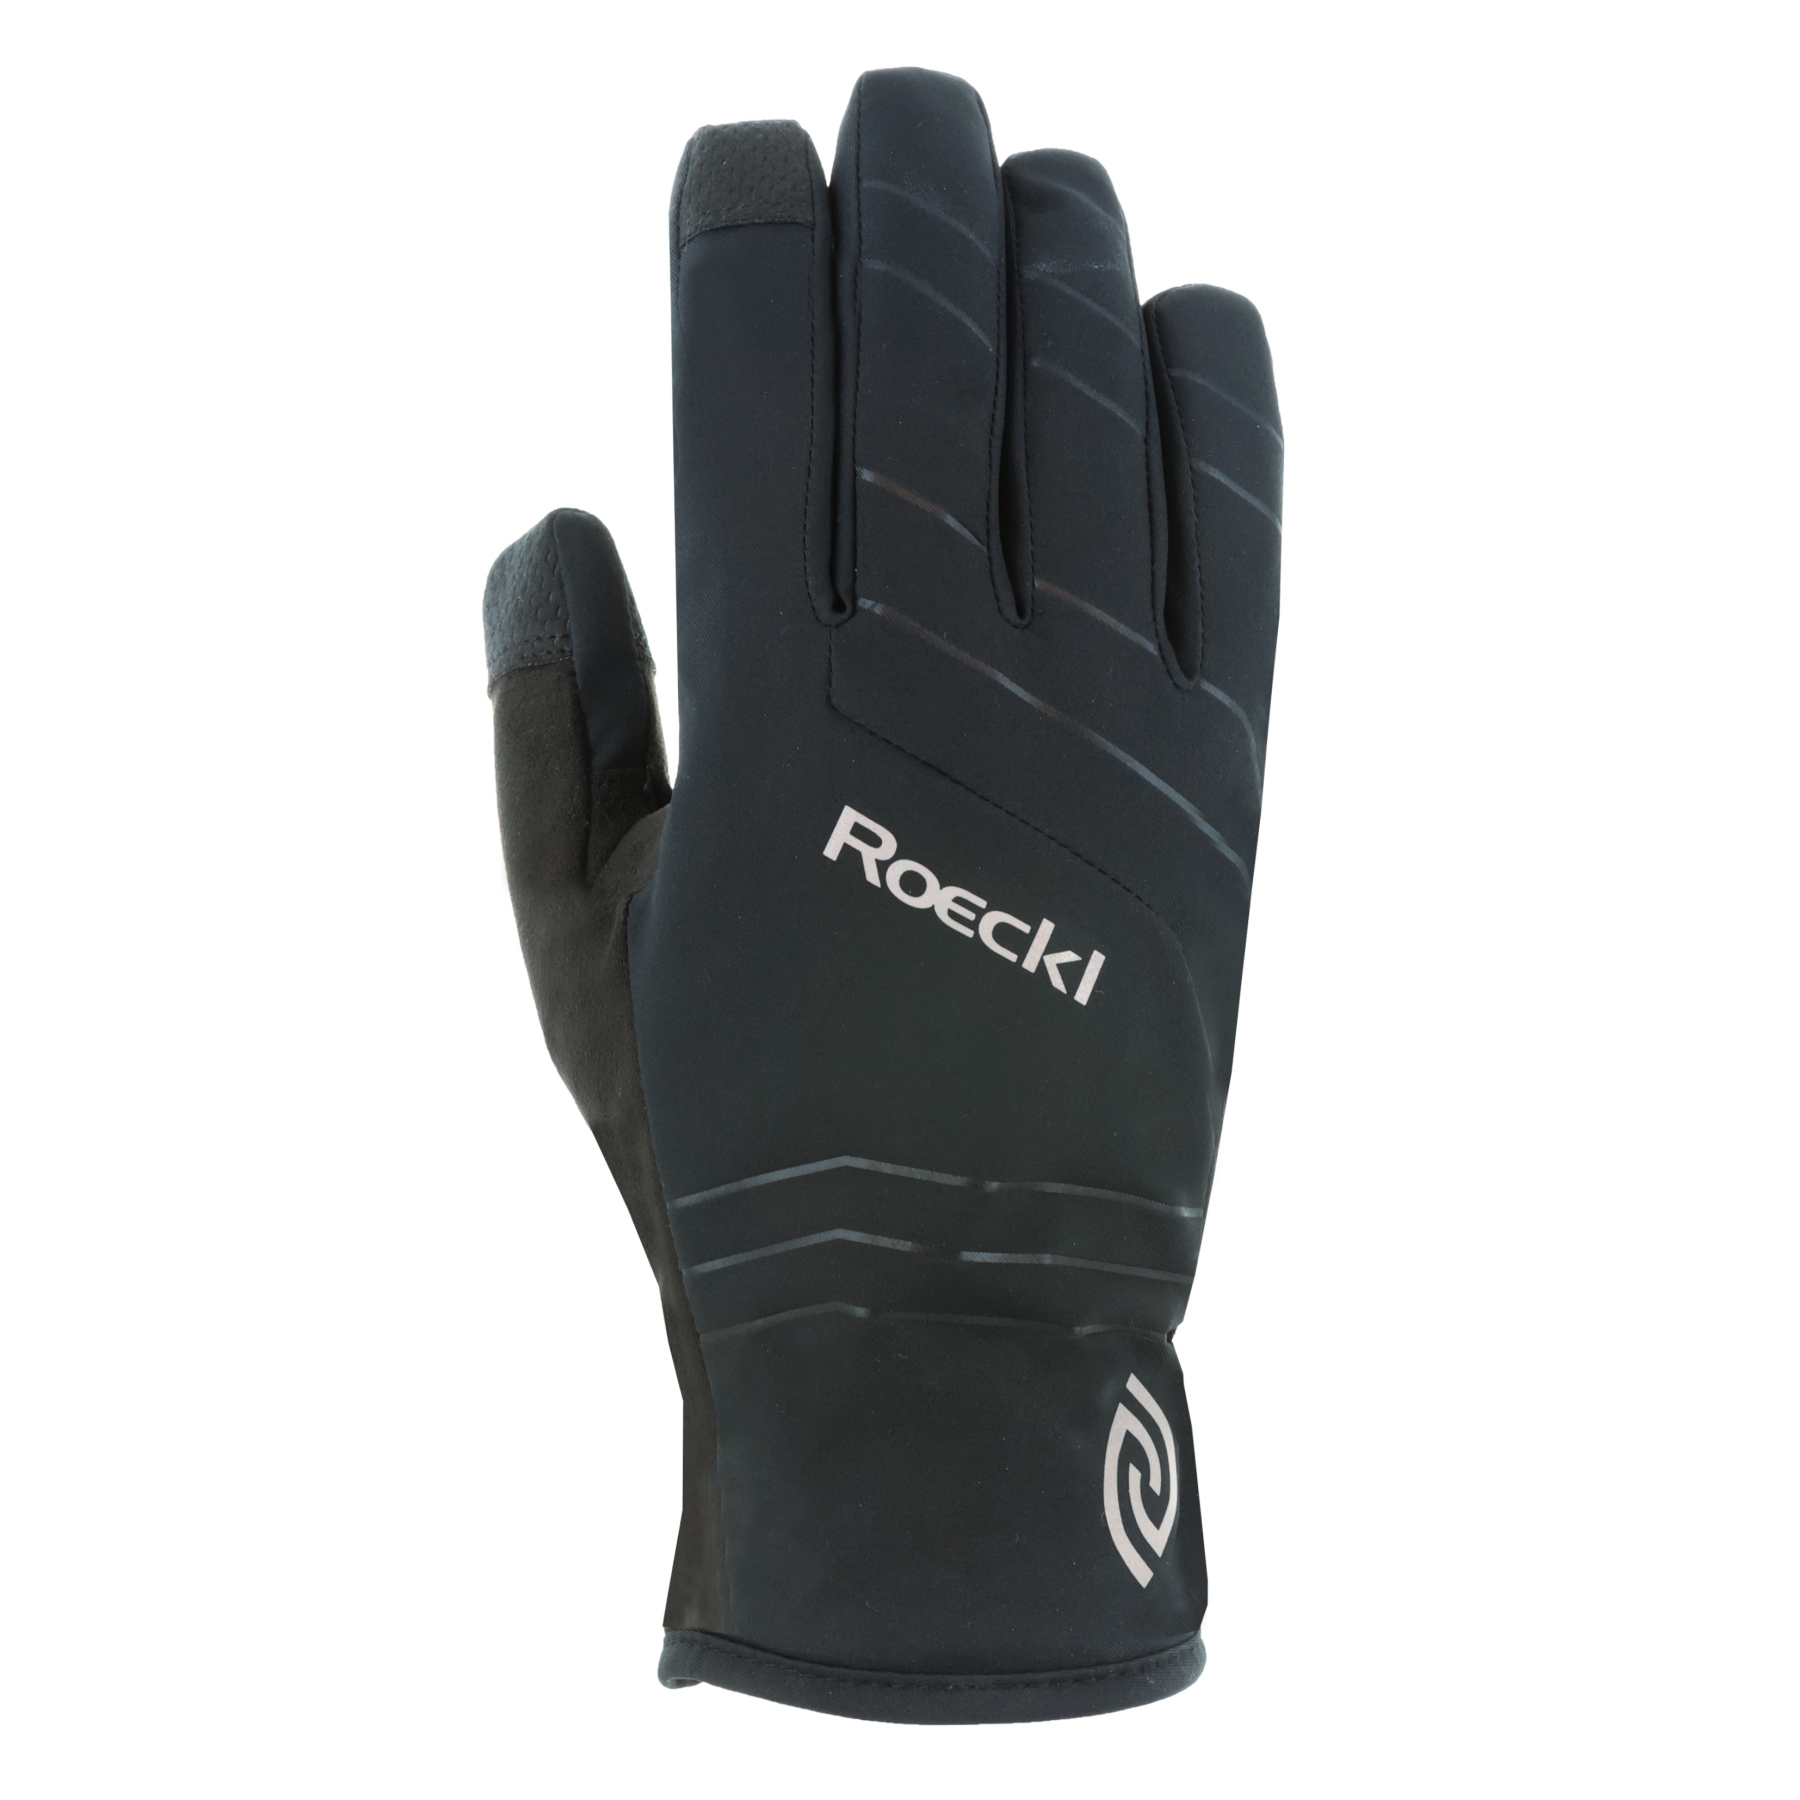 Produktbild von Roeckl Sports Rosegg GTX Fahrradhandschuhe - schwarz 9000